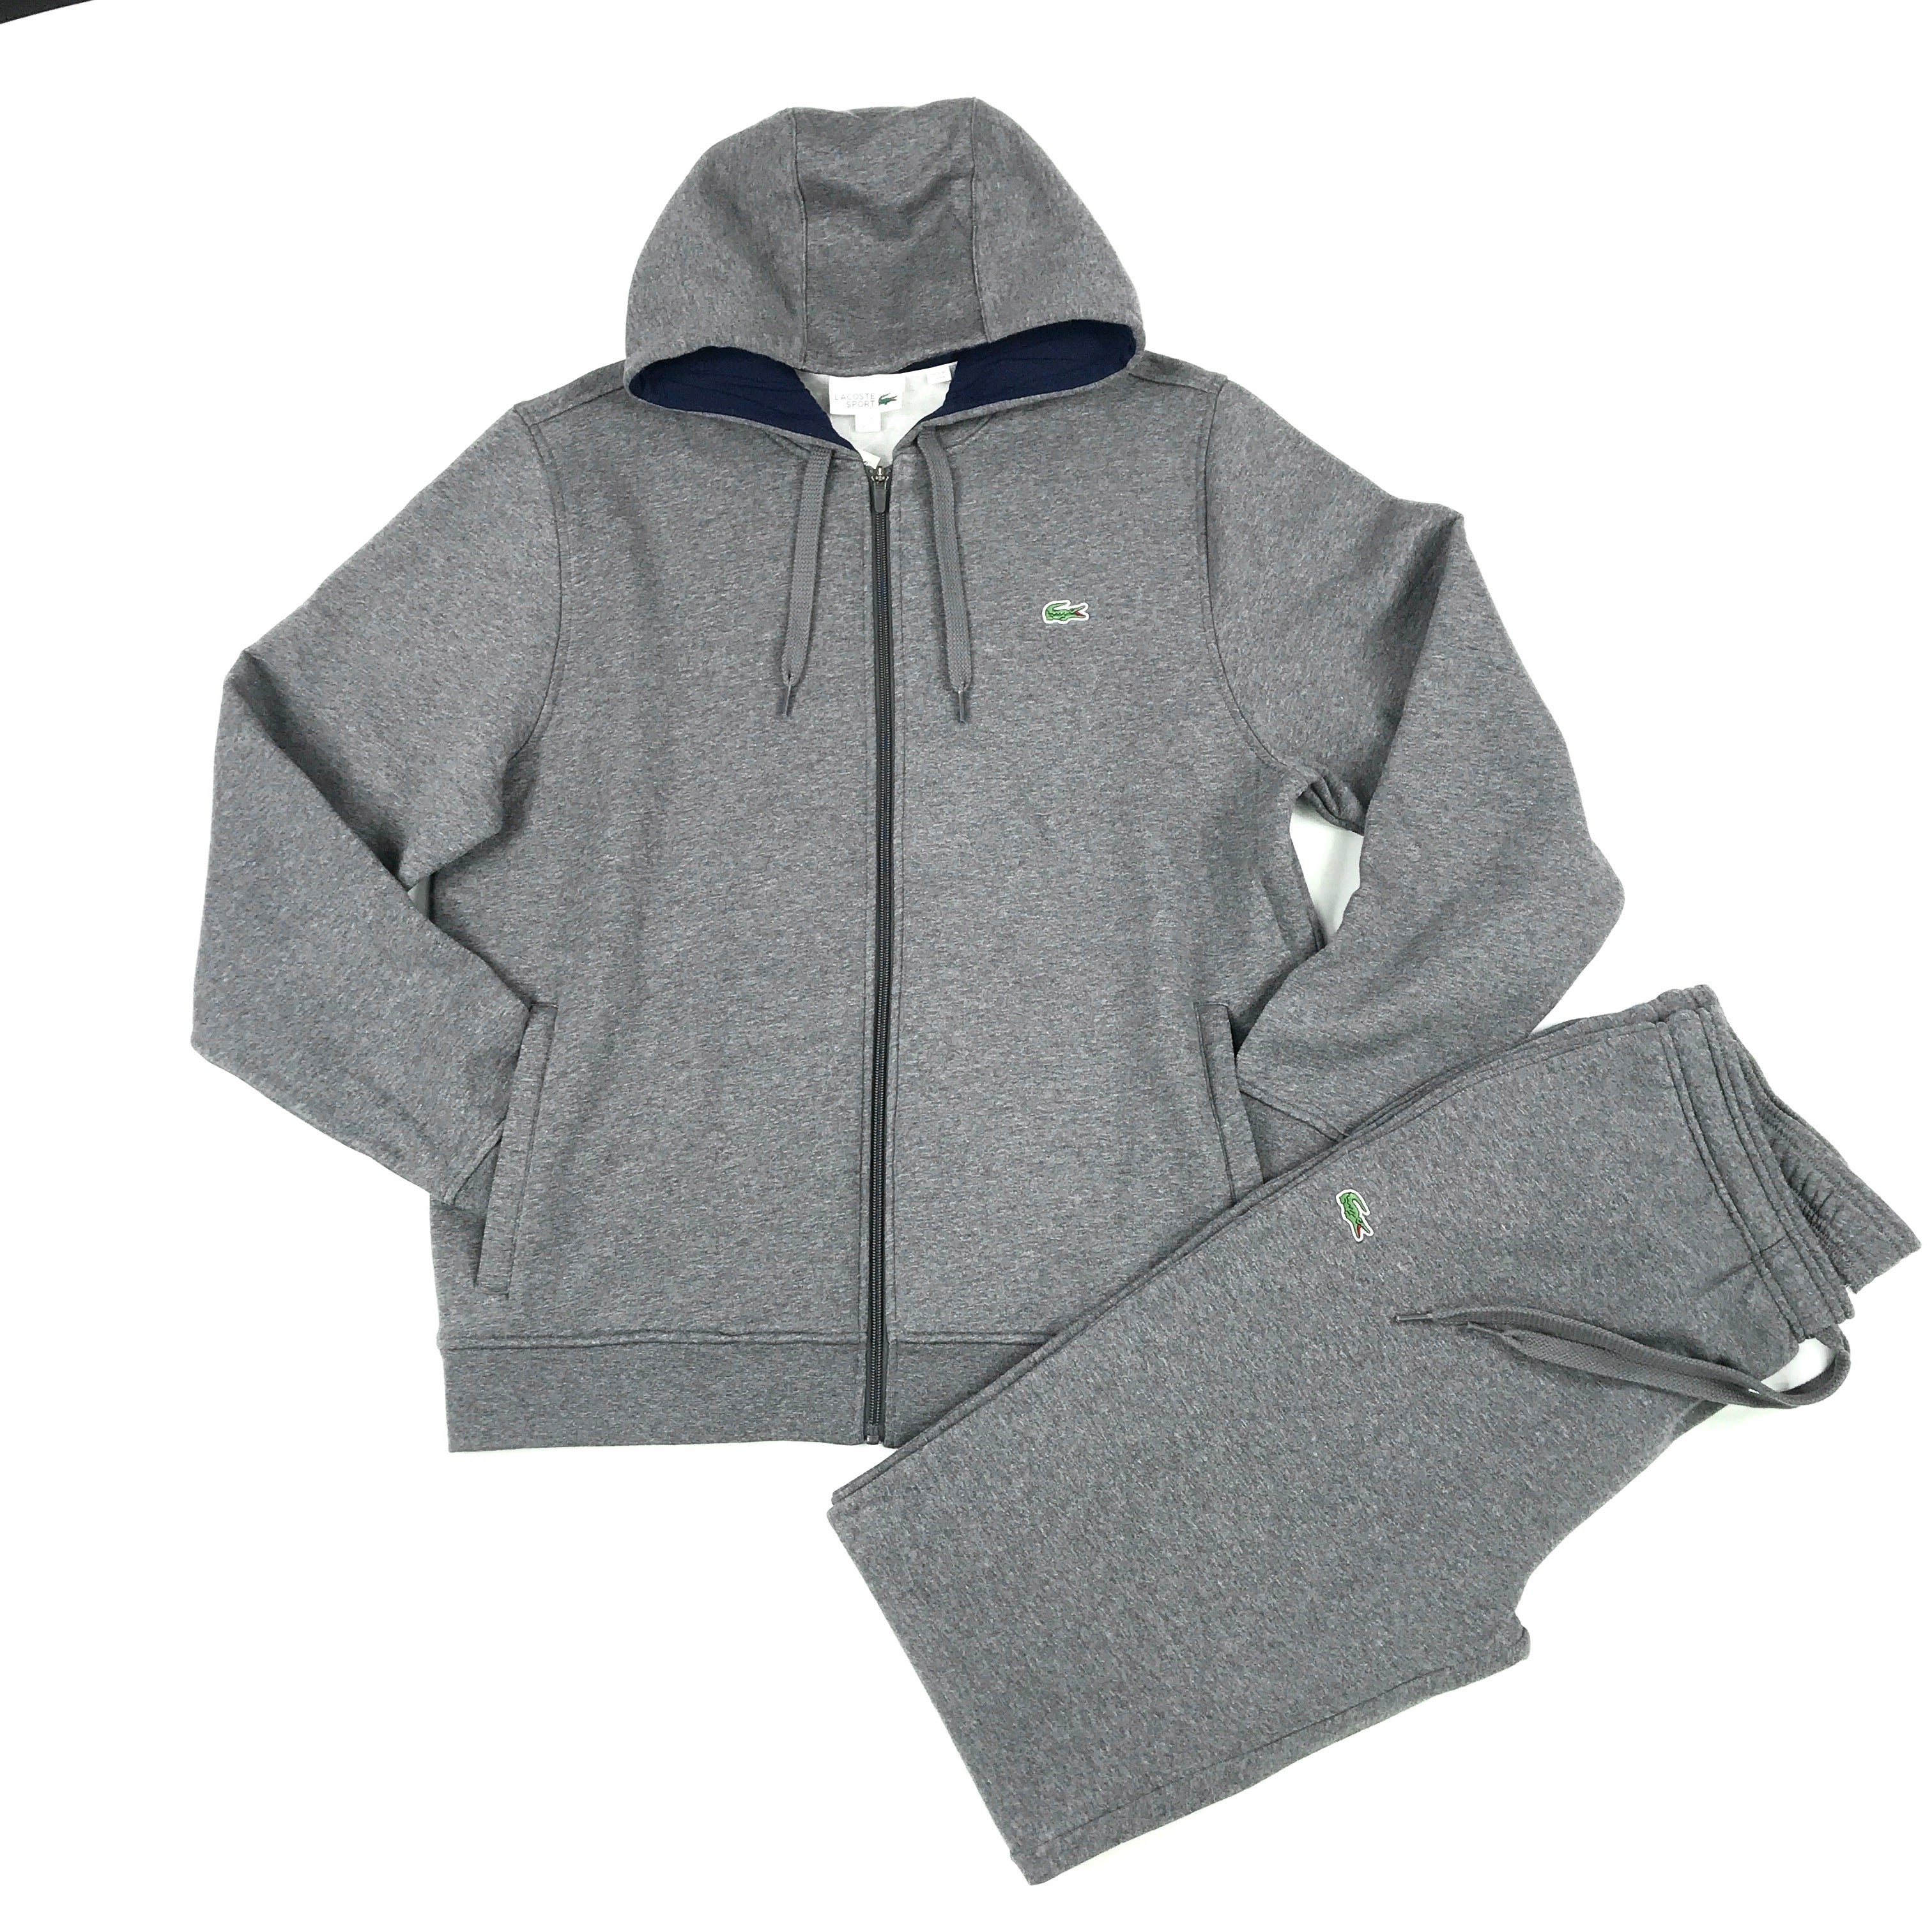 Lacoste dark heather grey zip hoodie set